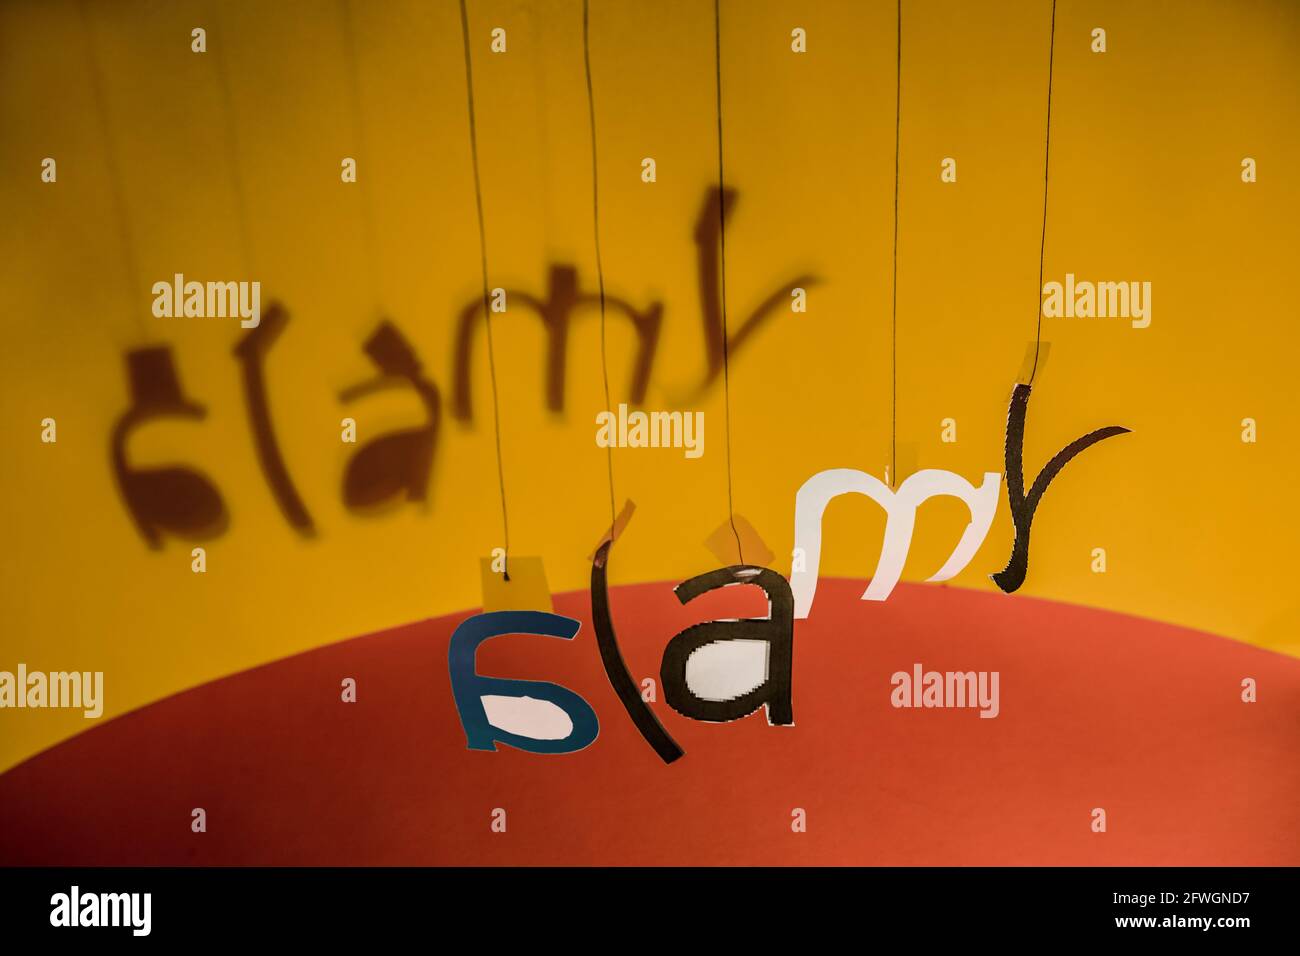 Las letras que cuelgan de hilos forman, en un cierto desorden, el logotipo de Alamy. Foto de stock